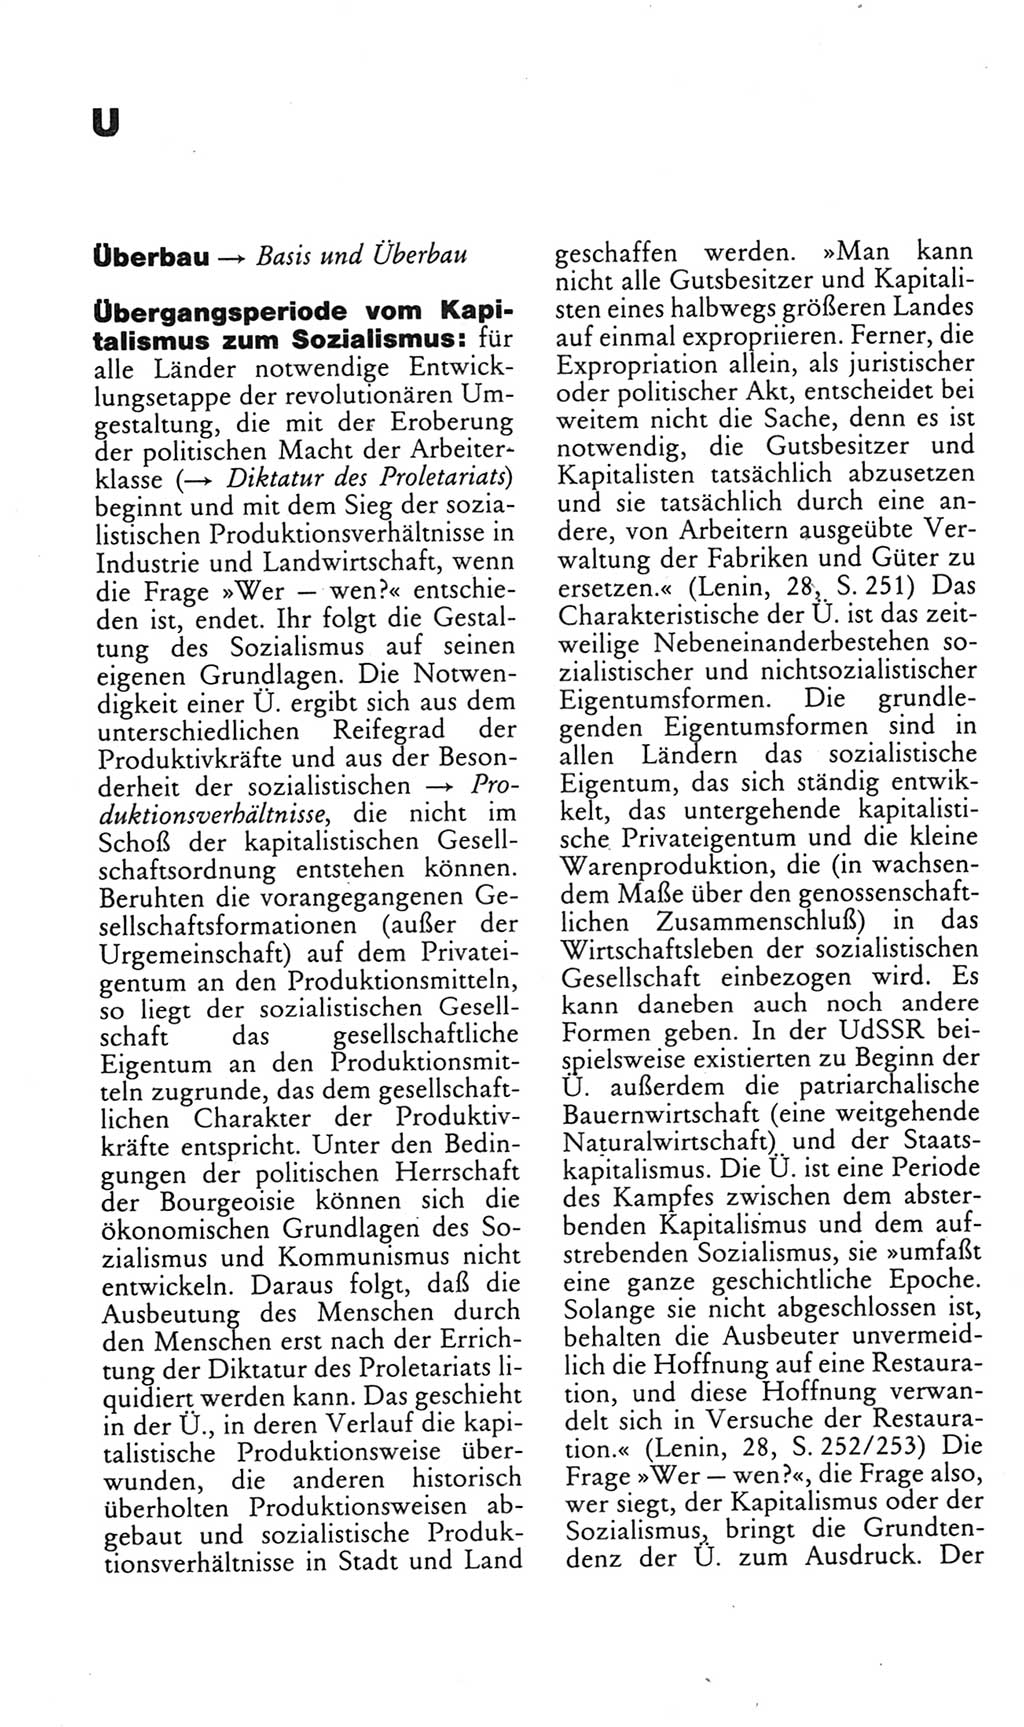 Kleines politisches Wörterbuch [Deutsche Demokratische Republik (DDR)] 1985, Seite 954 (Kl. pol. Wb. DDR 1985, S. 954)